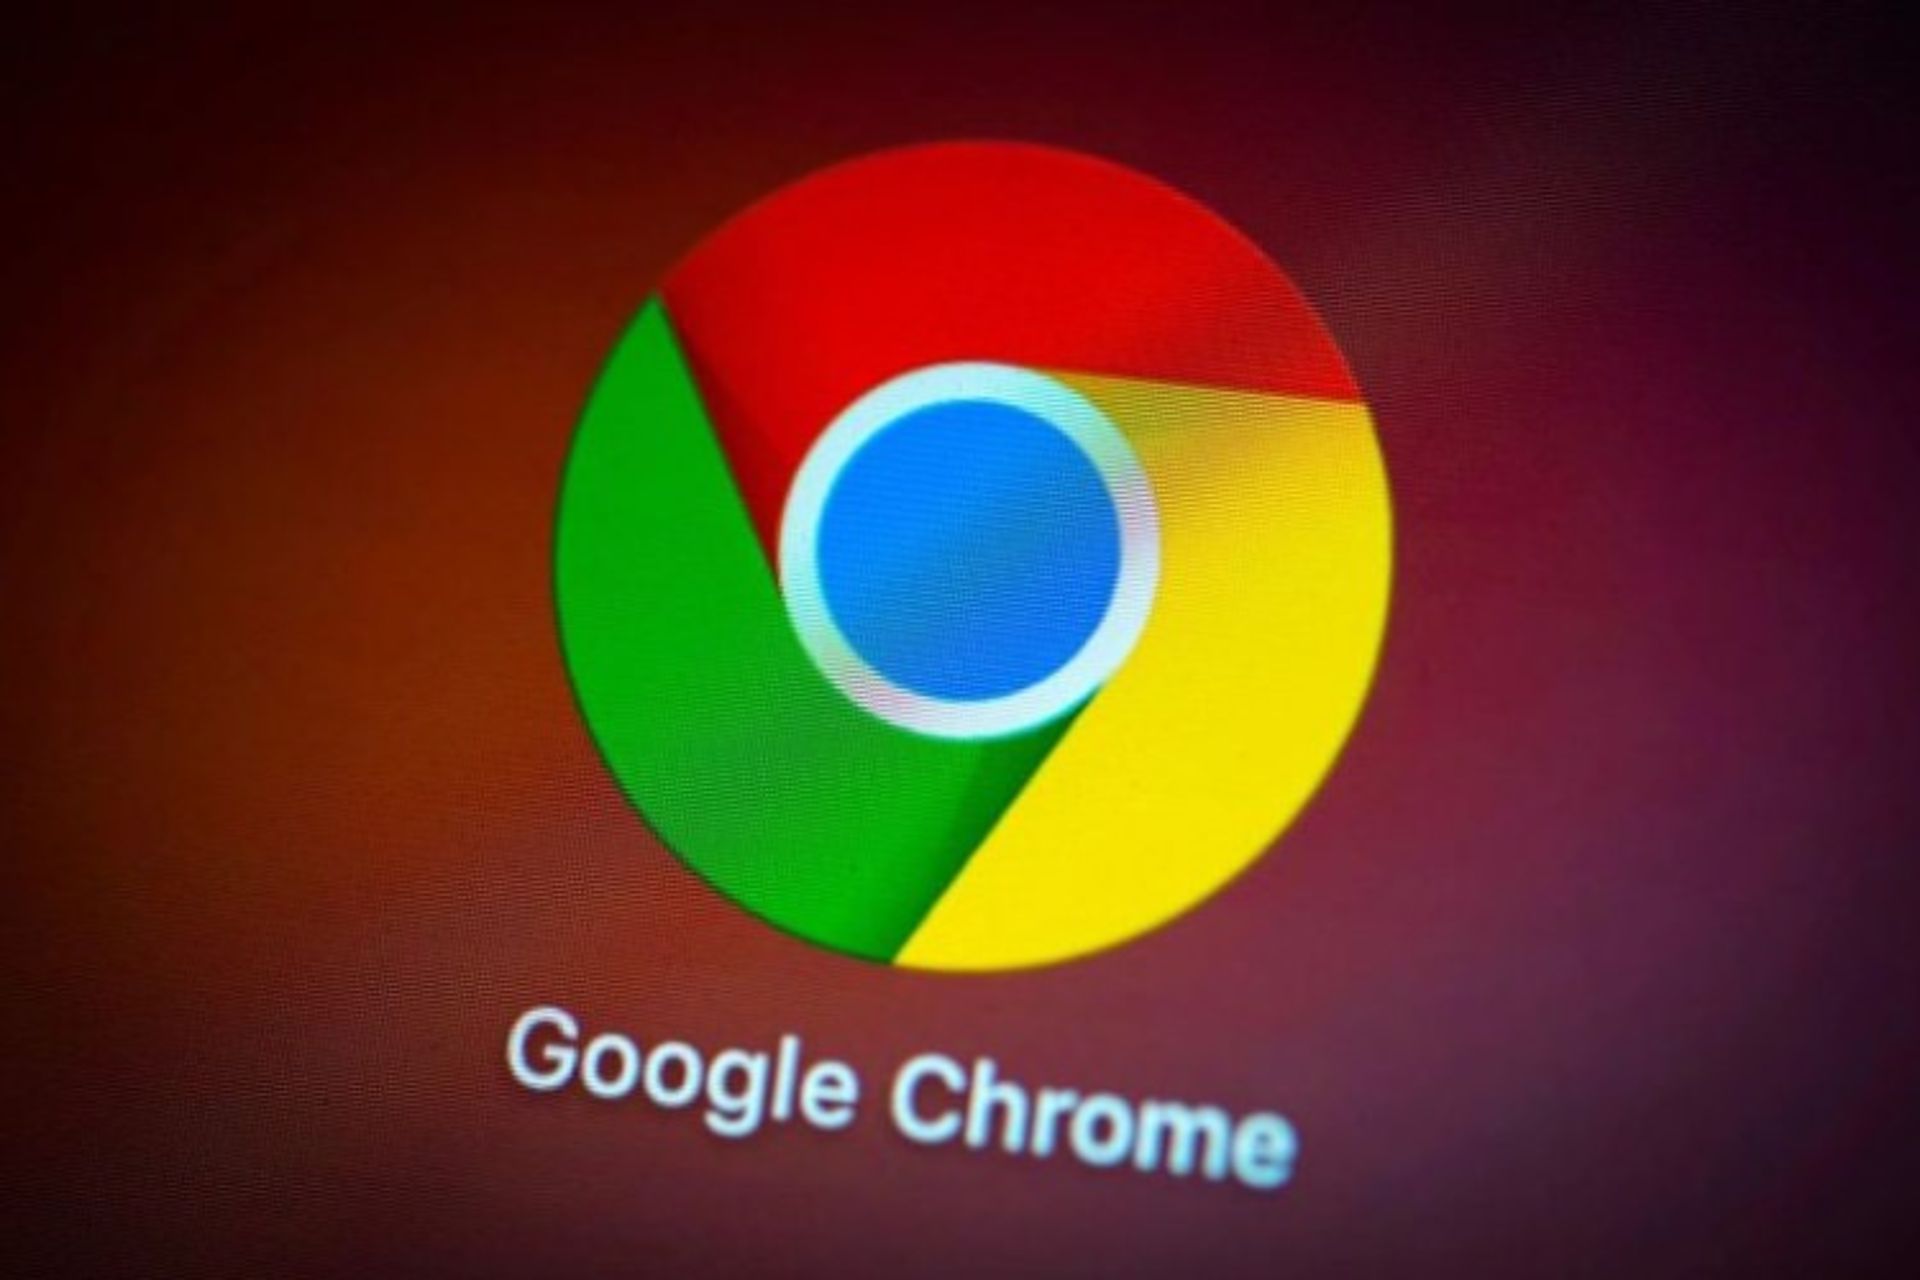 مرجع متخصصين ايران لوگو گوگل كروم / Google Chrome در پس زمينه قرمز